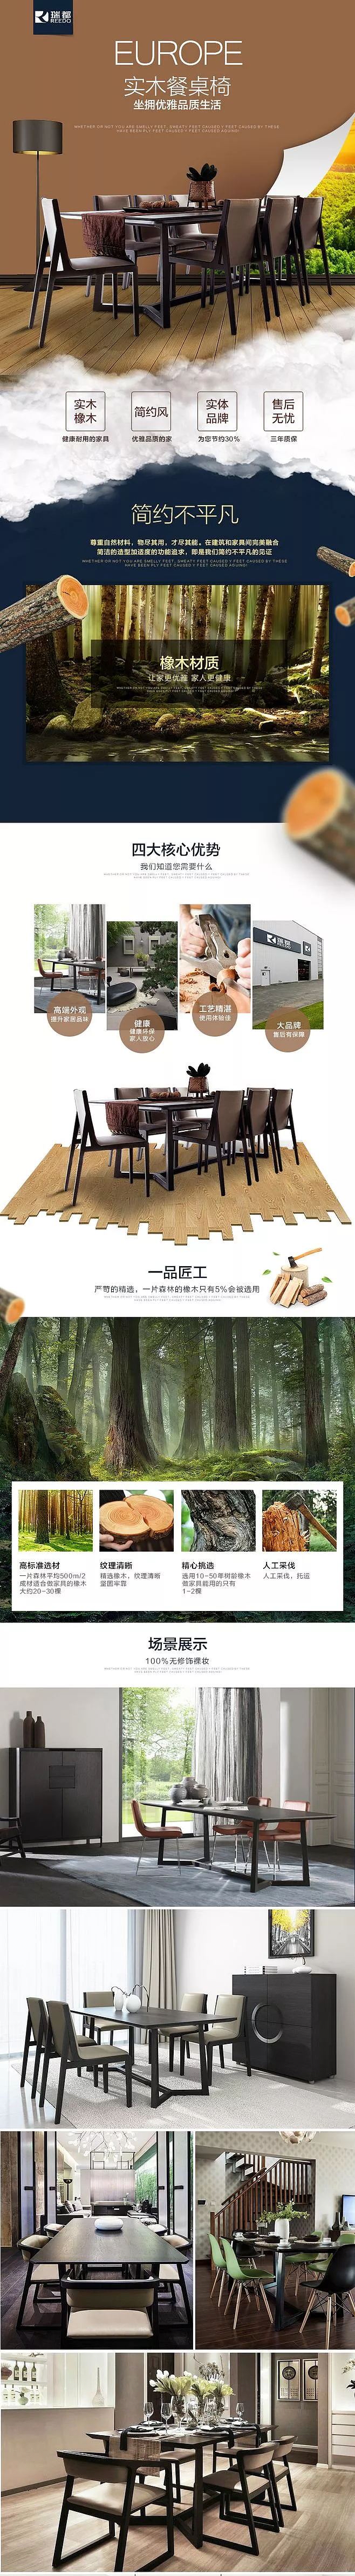 淘宝美工诺夏北欧风格实木餐桌椅组合家具家居简约大气作品